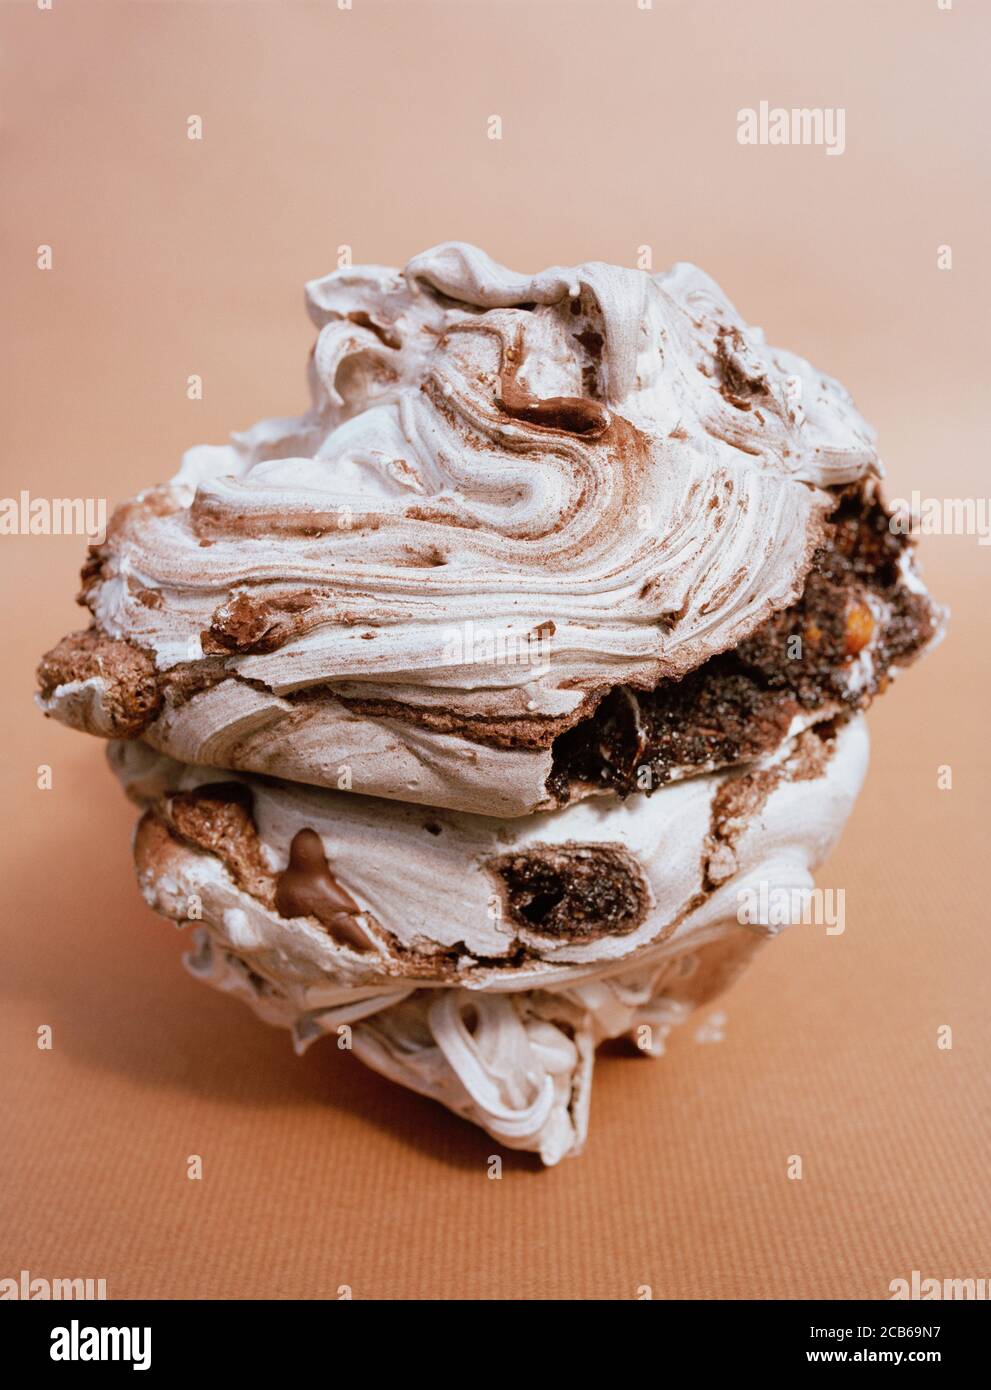 Una meringa aromatizzata con cioccolato e nocciole arrosto Foto Stock